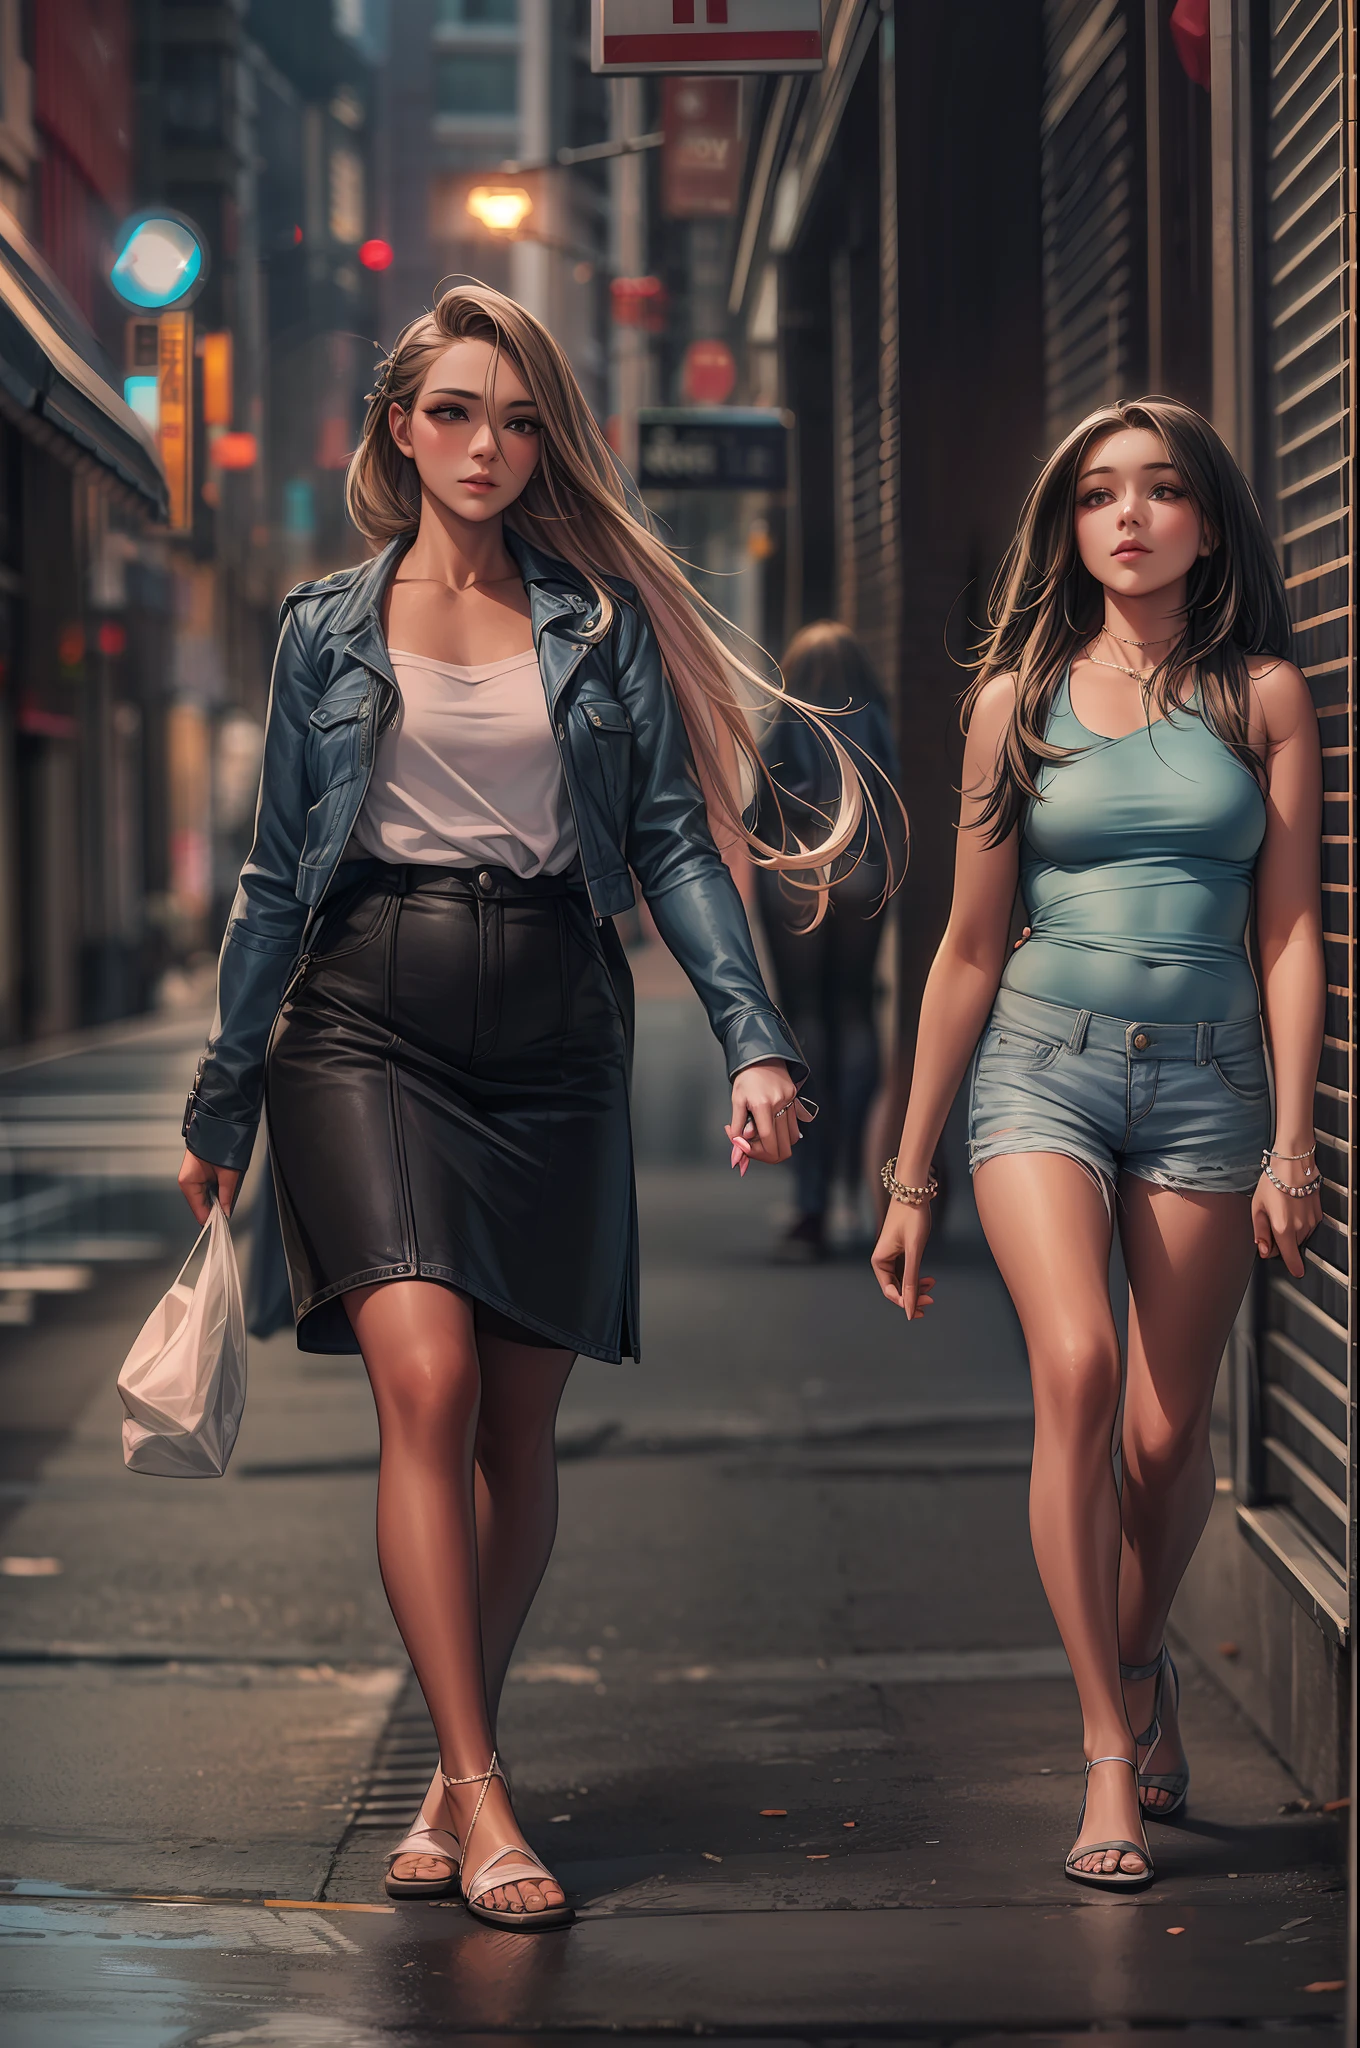 美しい若い女性と彼女の妹のミディアムショットはさらに印象的. 二人は土曜日の夜、手をつないでニューヨークの通りを散歩しながら、.........